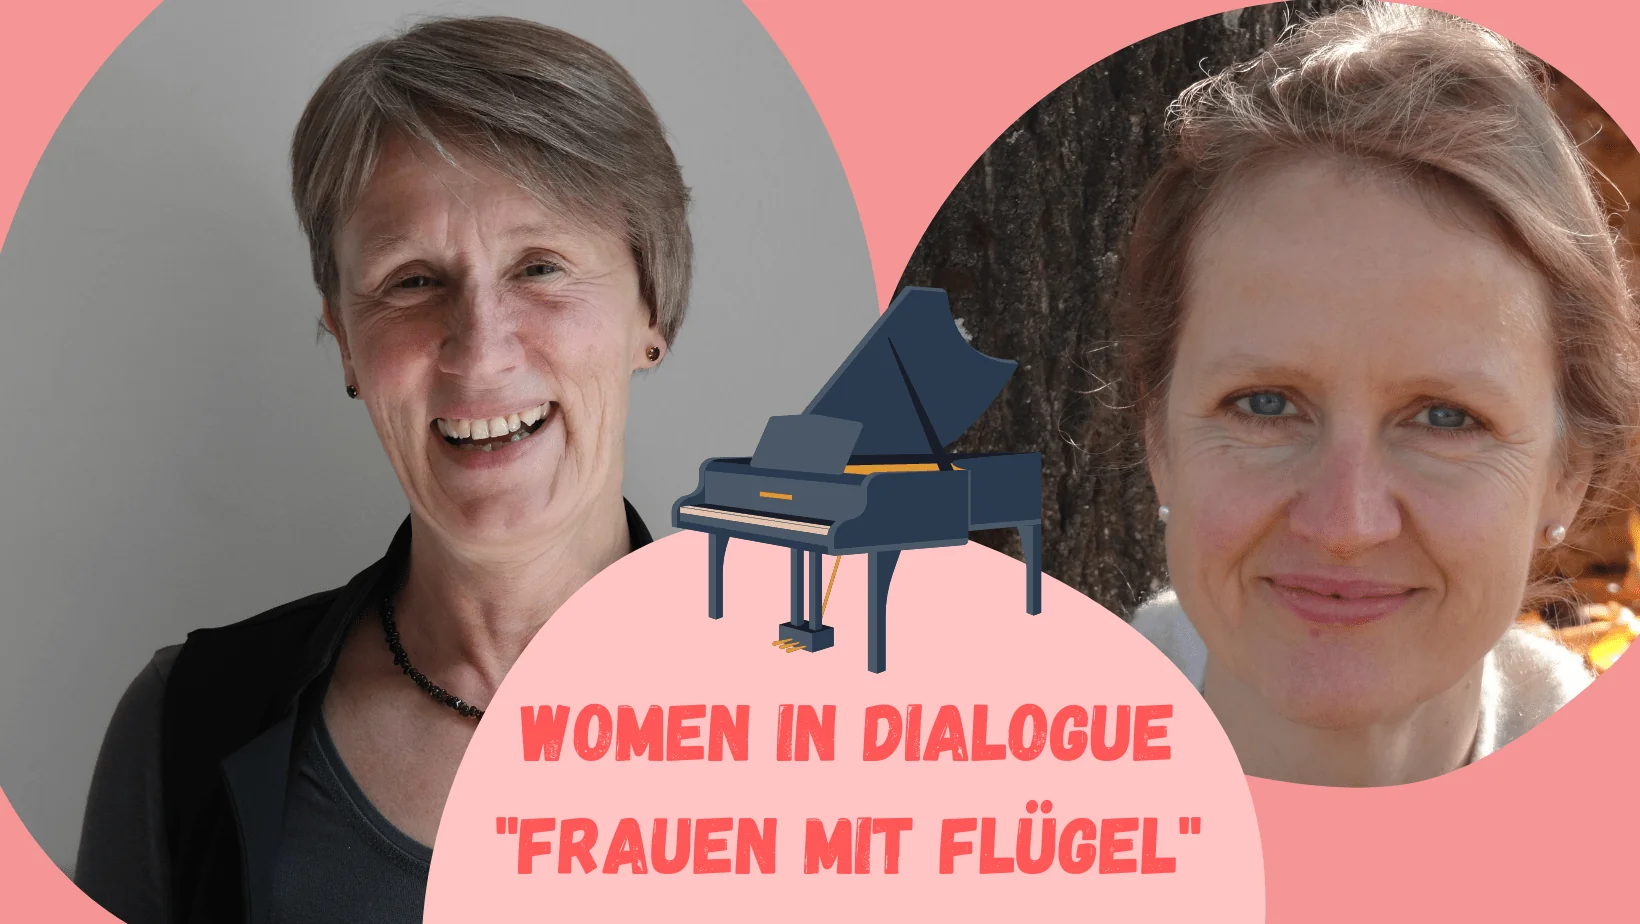 Women in Dialogue "Frauen mit Flügel"